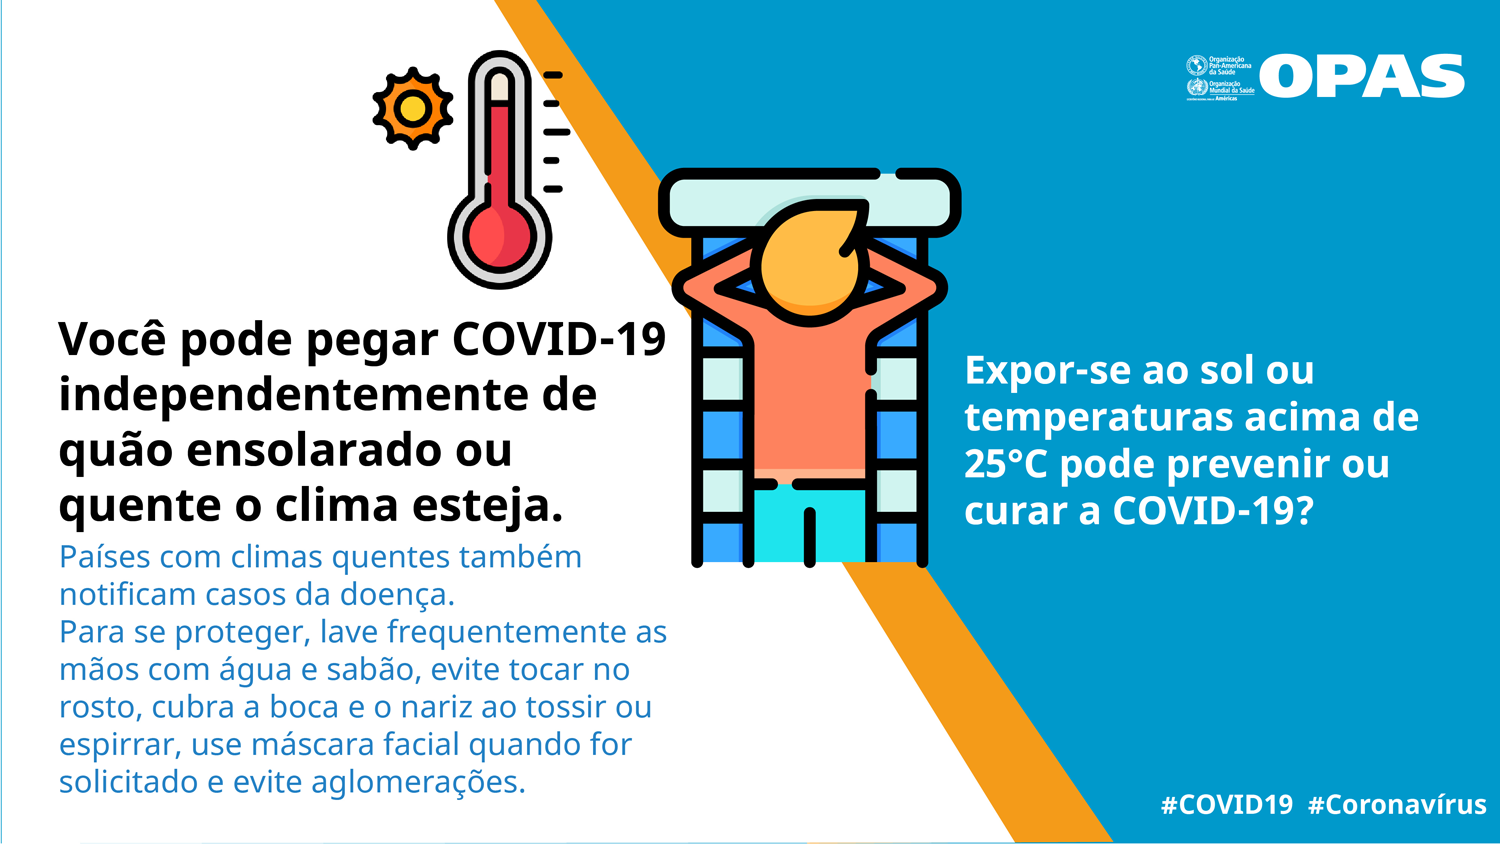 Você pode pegar COVID-19 independentemente de quão ensolarado ou quente o clima esteja.